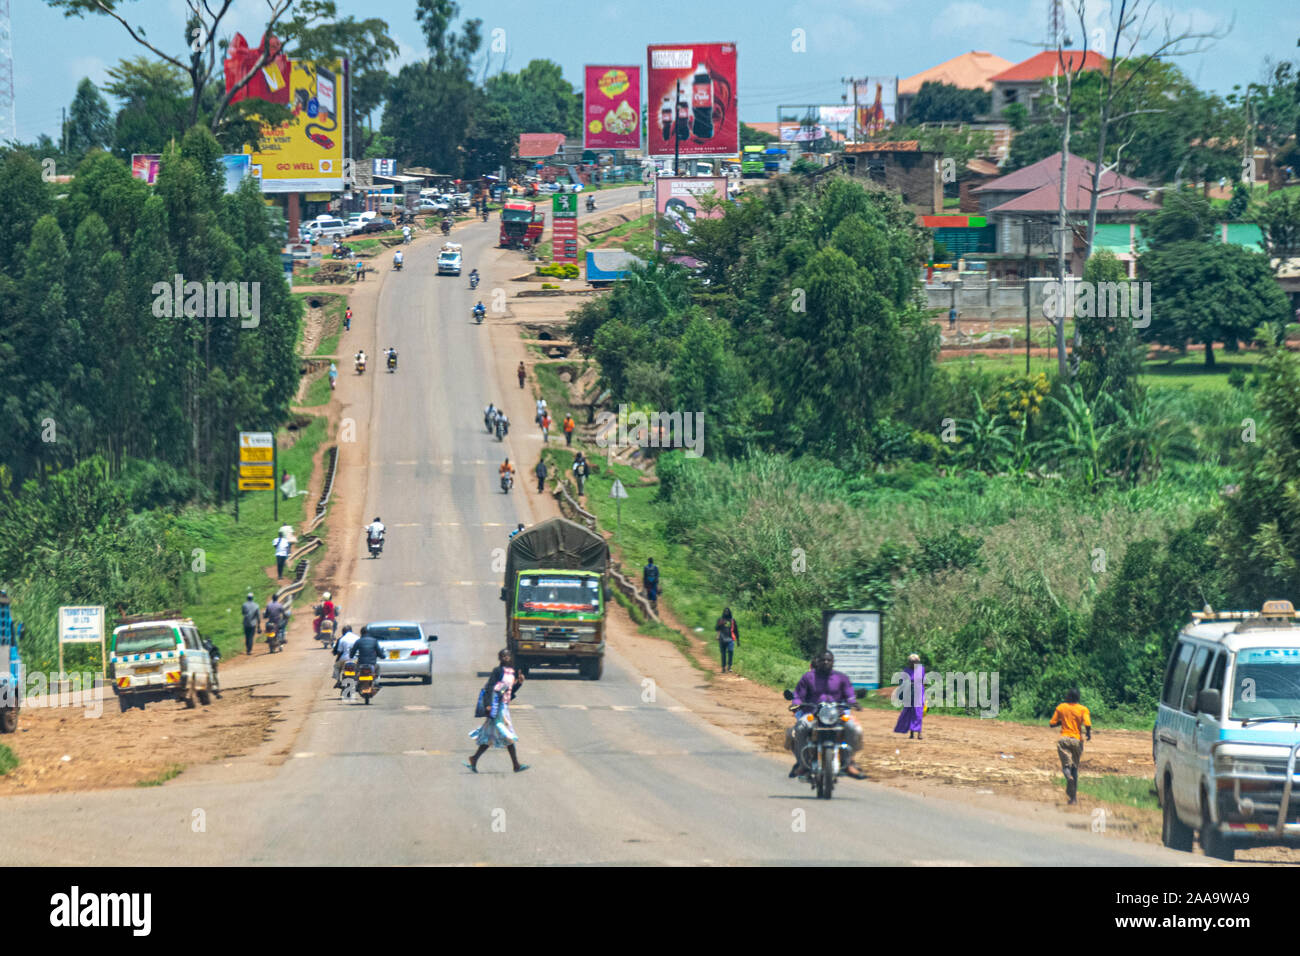 La route vers Iganga, Jinja, région orientale de l'Ouganda Banque D'Images